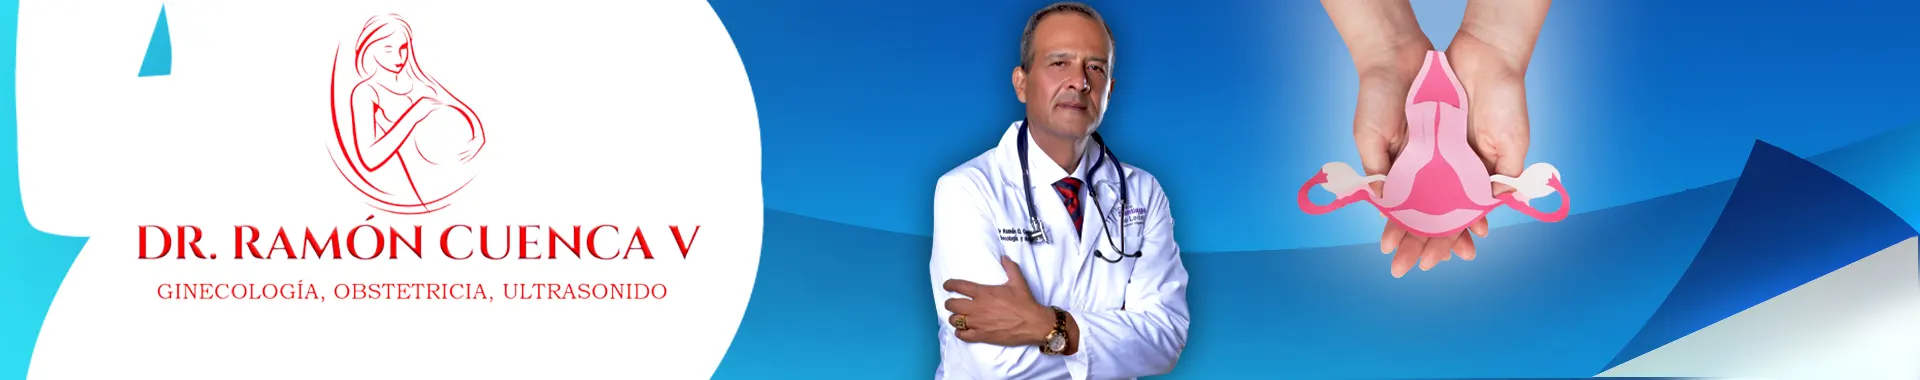 Imagen 1 del perfil de Dr. Ramón Cuenca Vivas